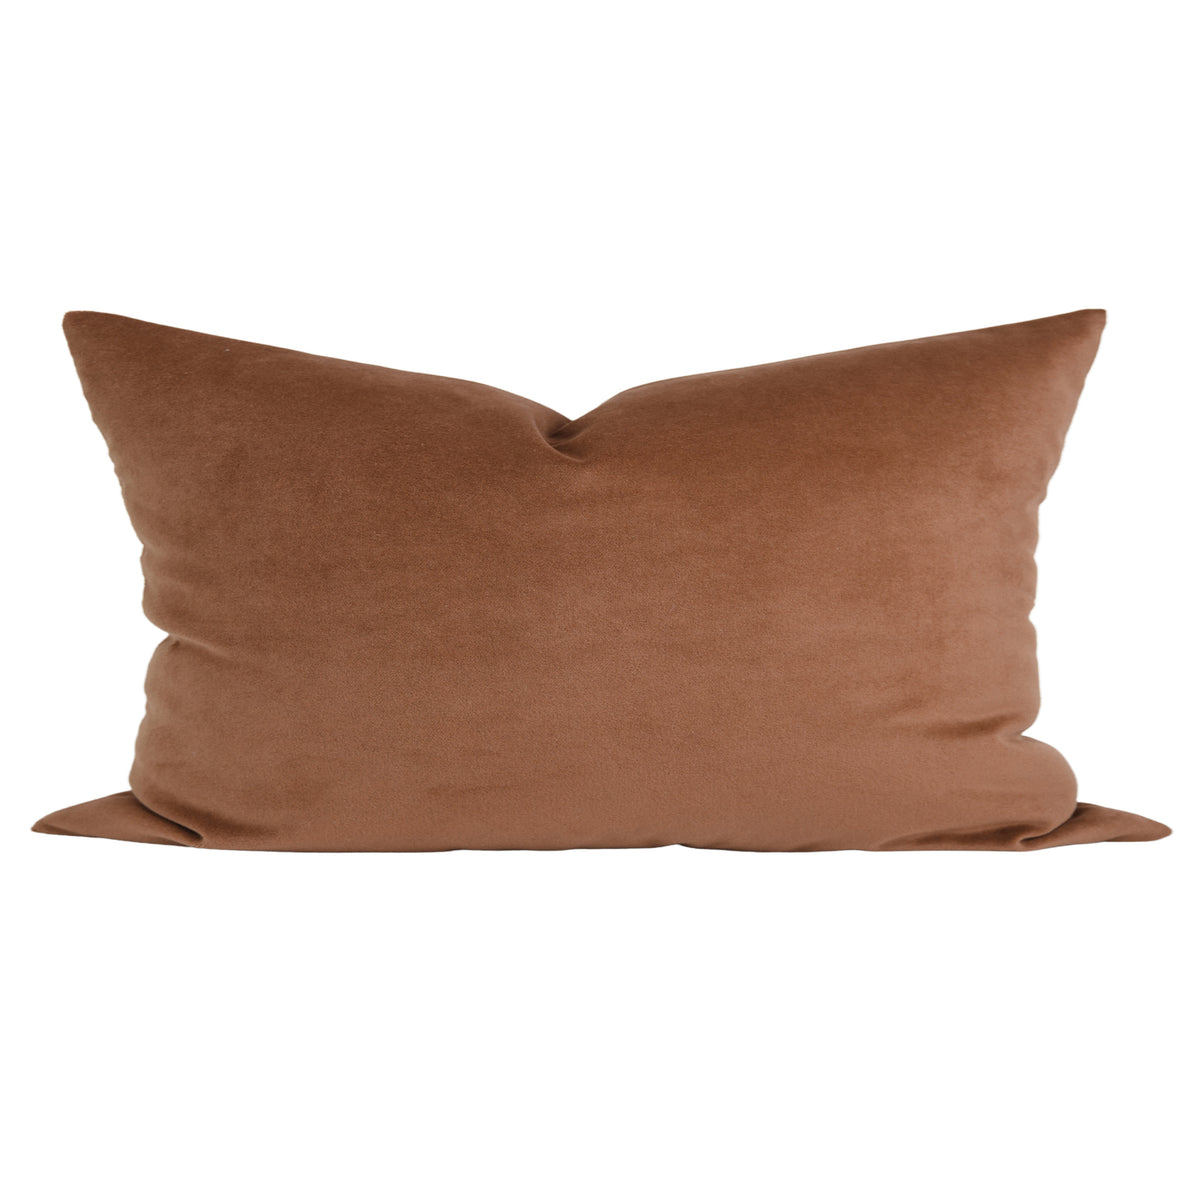 Copper Velvet New Pillow Cover